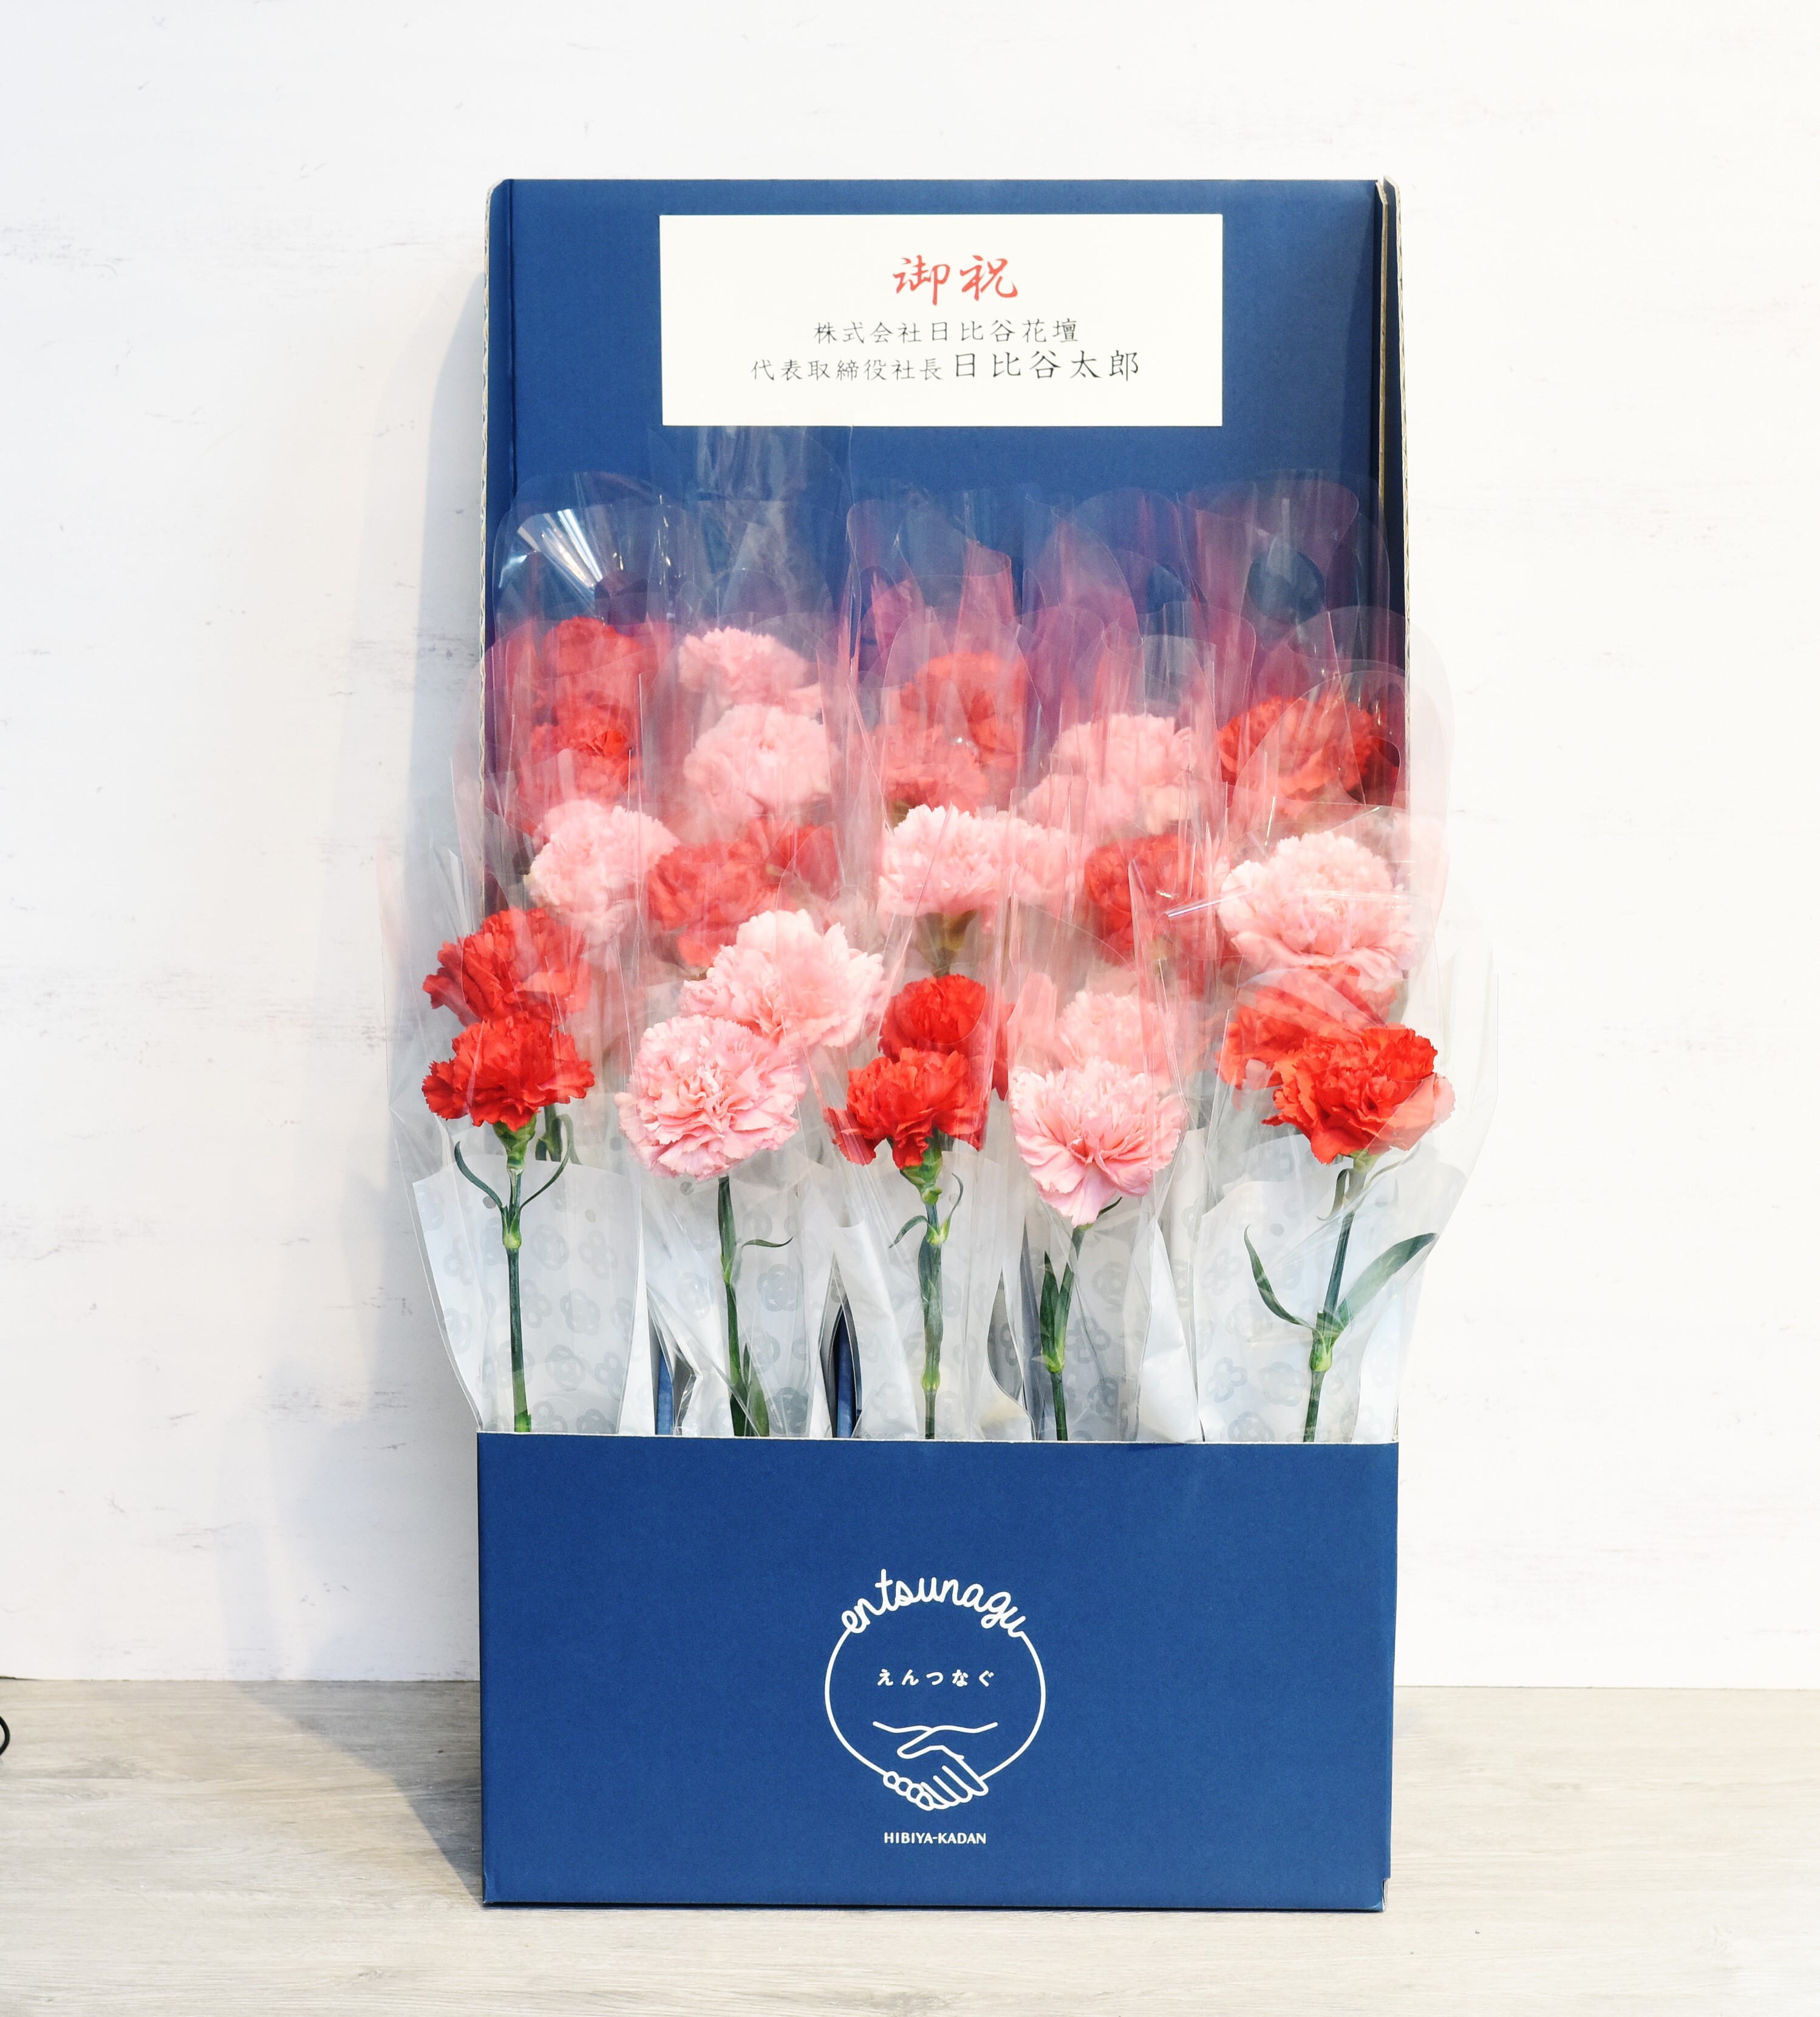 新スタイルの花の販促アイテム「en-tsunagu(えんつなぐ)」配れるフラワースタンド、配れるフラワーボックスを、8月27日(火)注文受付